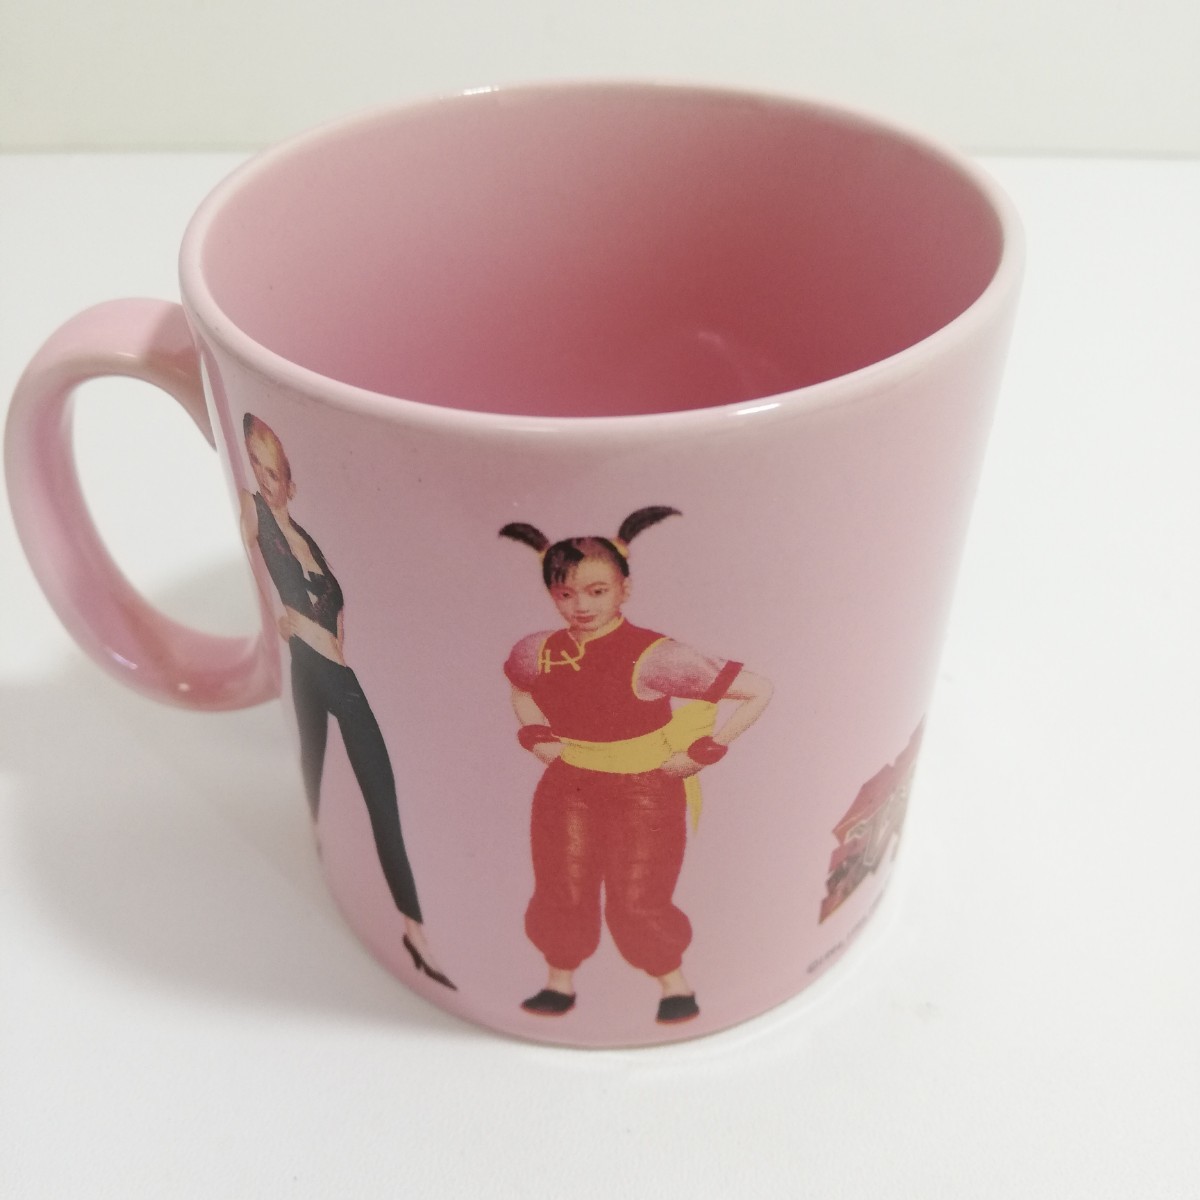 1996年 namco ナムコ 鉄拳3 マグカップ ピンク 口径7.6cm×高さ7.9cm [茶器 ゲームグッズ キャラクター マグ]_画像2